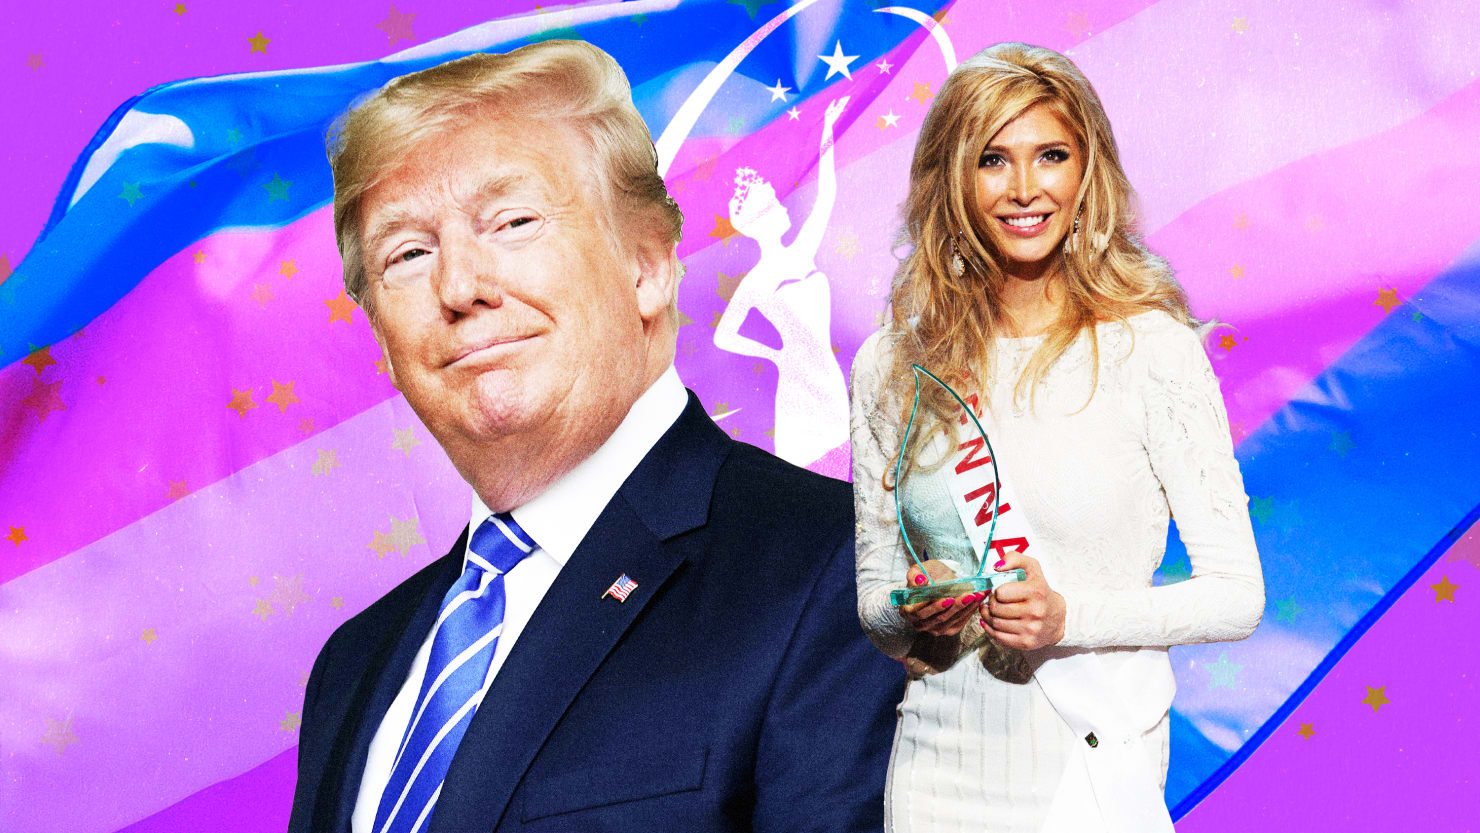 Trump respaldó a la reina de la belleza trans antes de volverse completamente fóbico